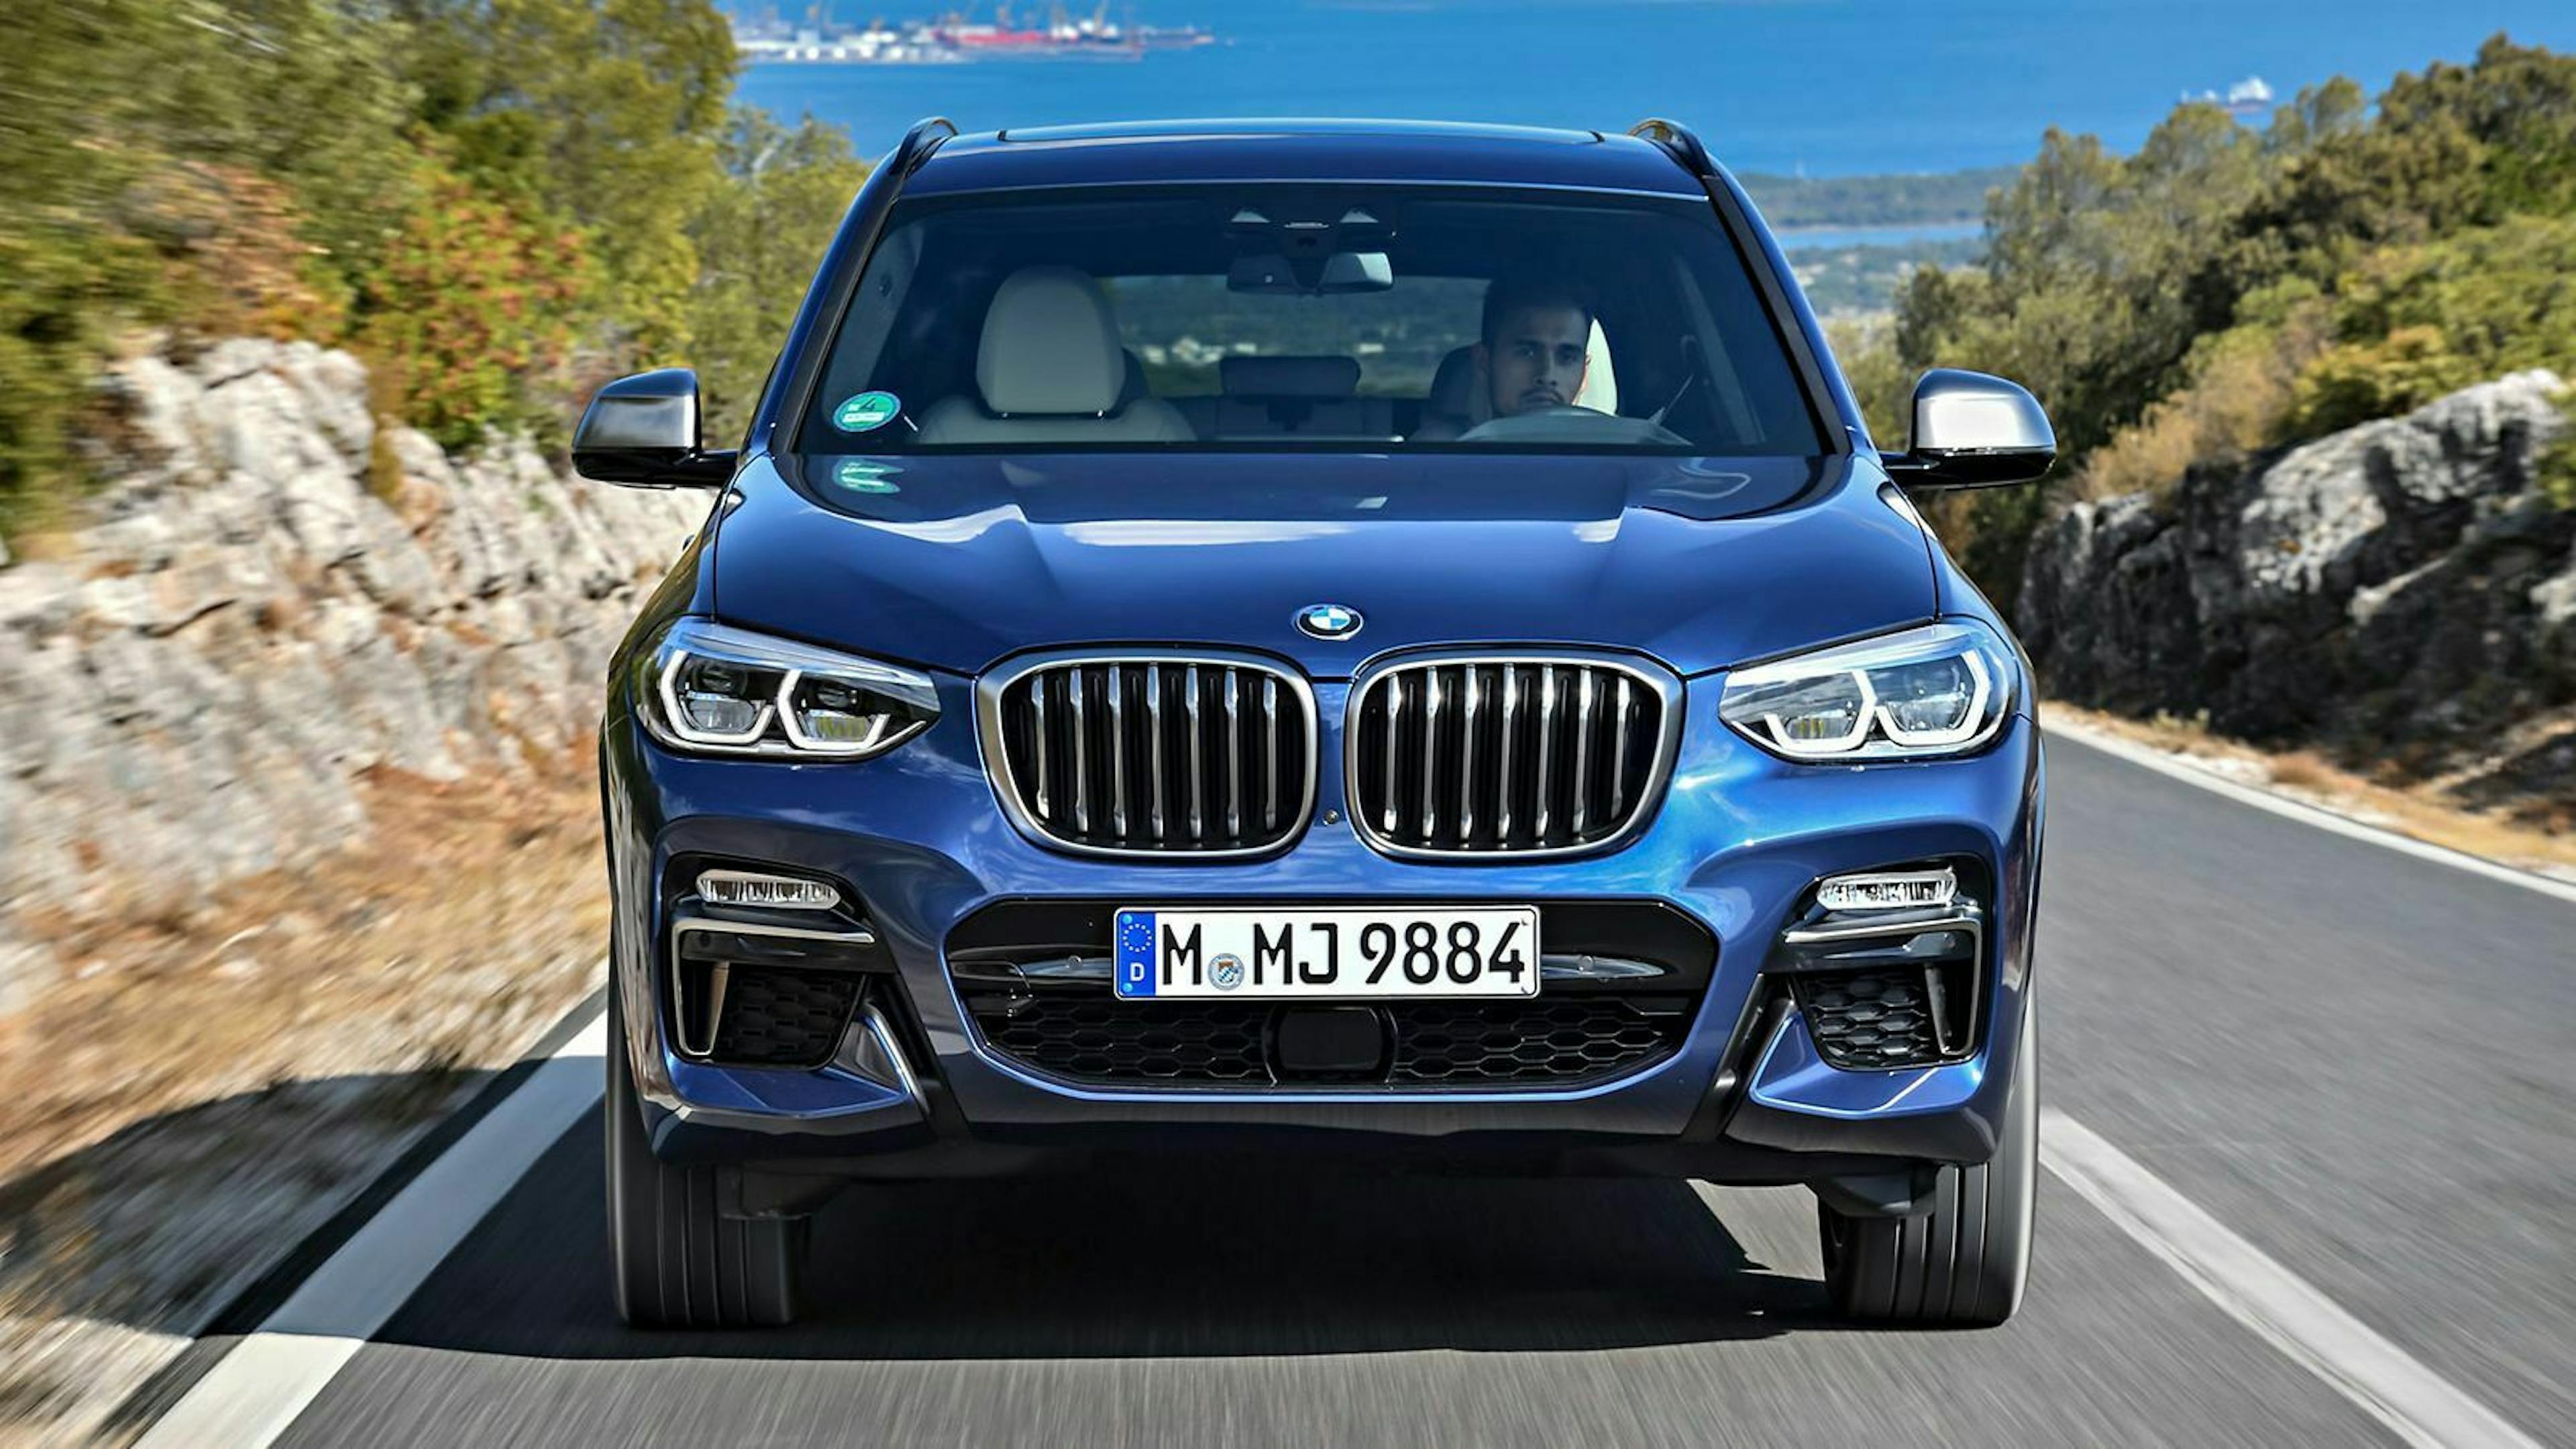 Der BMW X3 erreicht eine Höchstgeschwindigkeit von 215 km/h